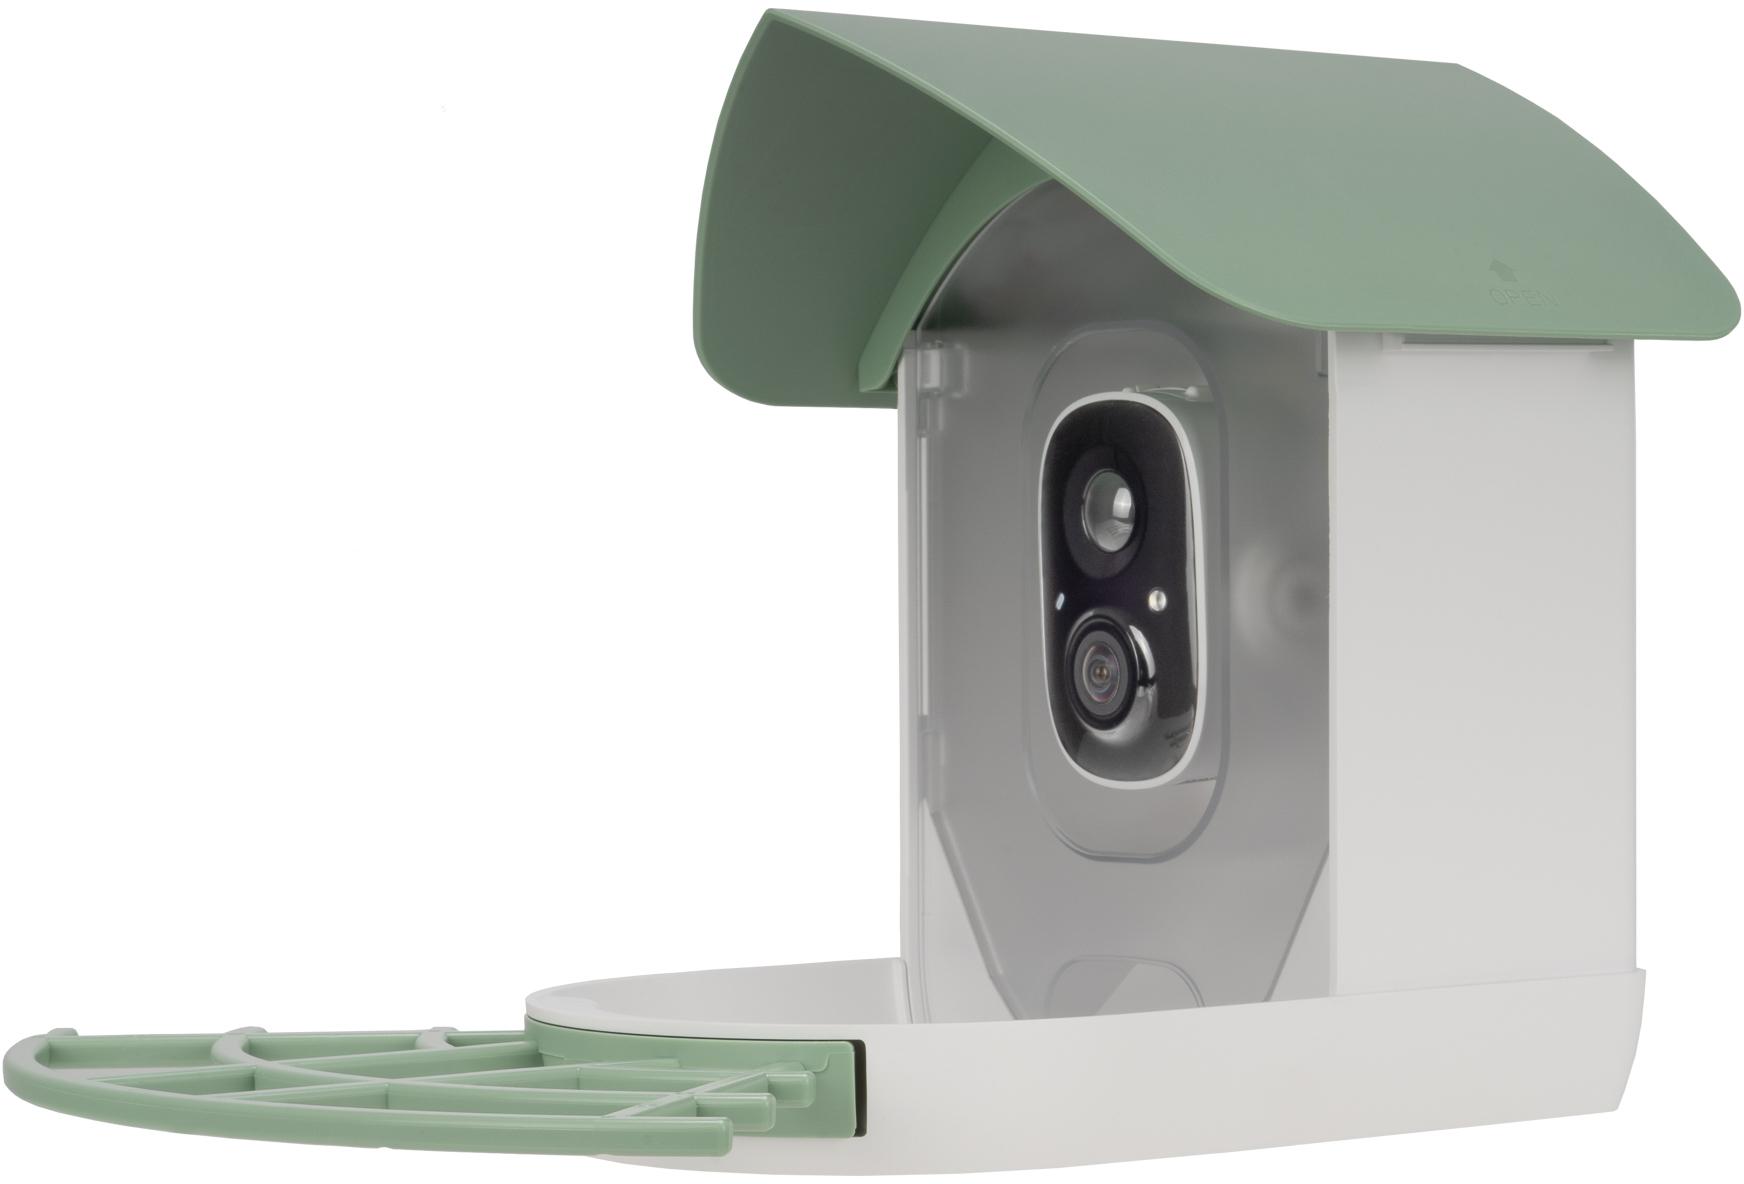 Kamera fotopułapka z karmnikiem dla ptaków Redleaf RD001 — do 128 GB przestrzeni na Twoje zdjęcia i filmy